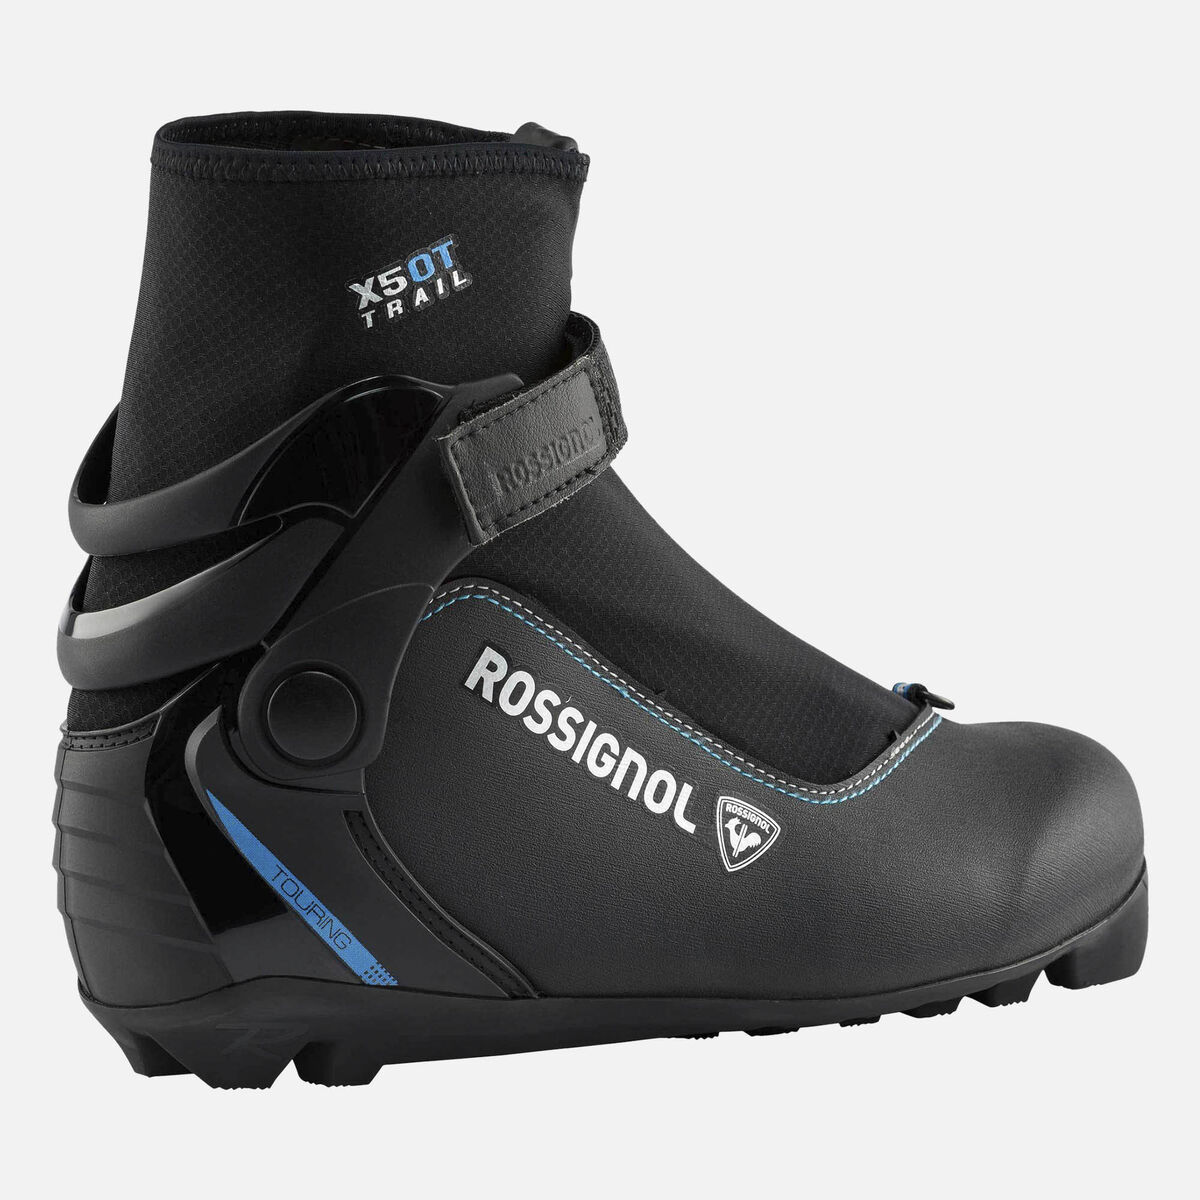 Chaussures de ski nordique Touring Femme Boots X-5 Ot Fw